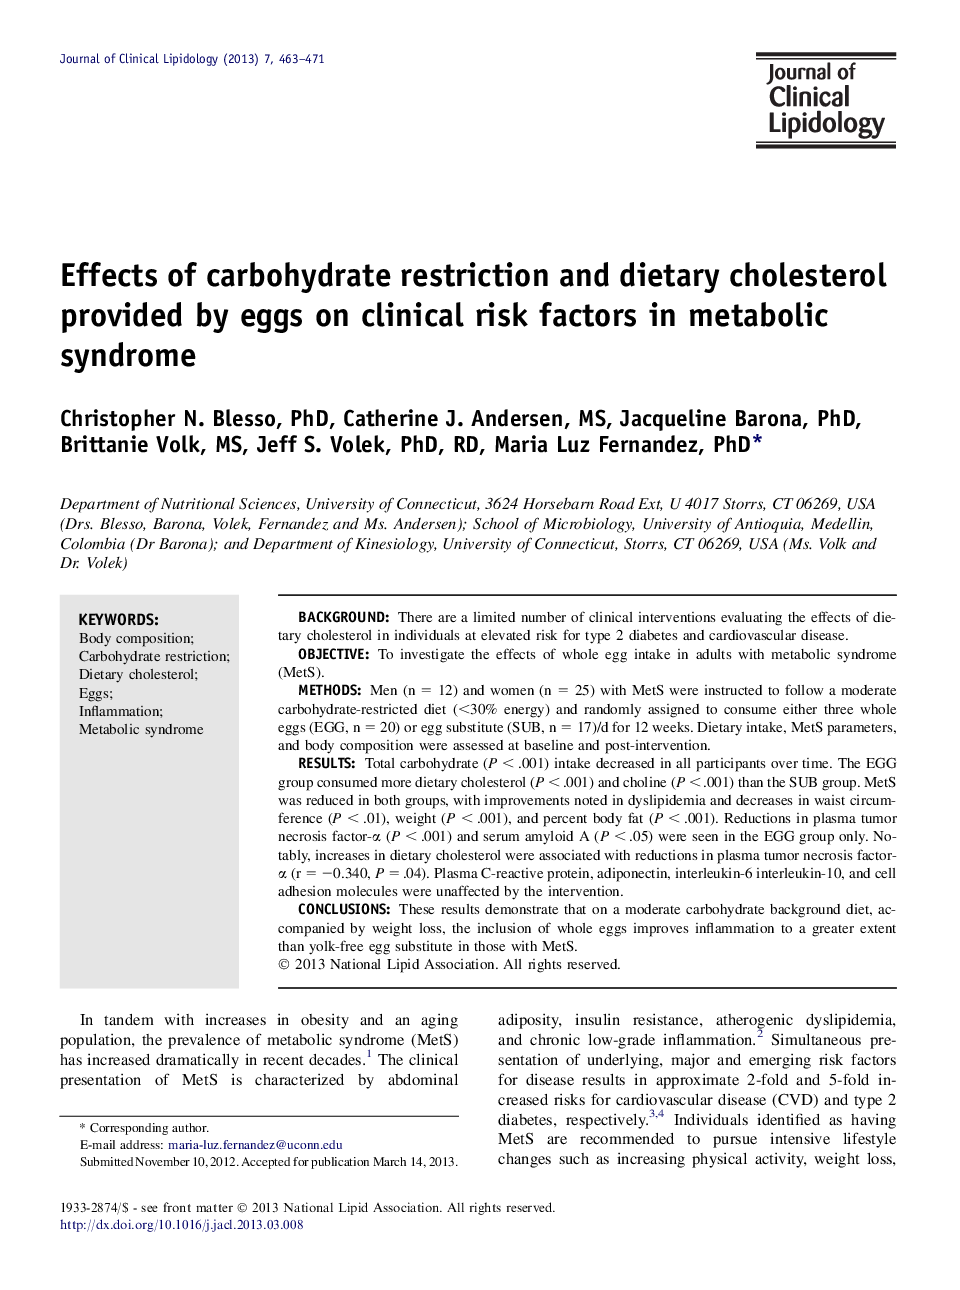 اثرات محدودیت کربوهیدرات و کلسترول رژیم غذایی تخم مرغ بر عوامل خطر بالینی در سندرم متابولیک 